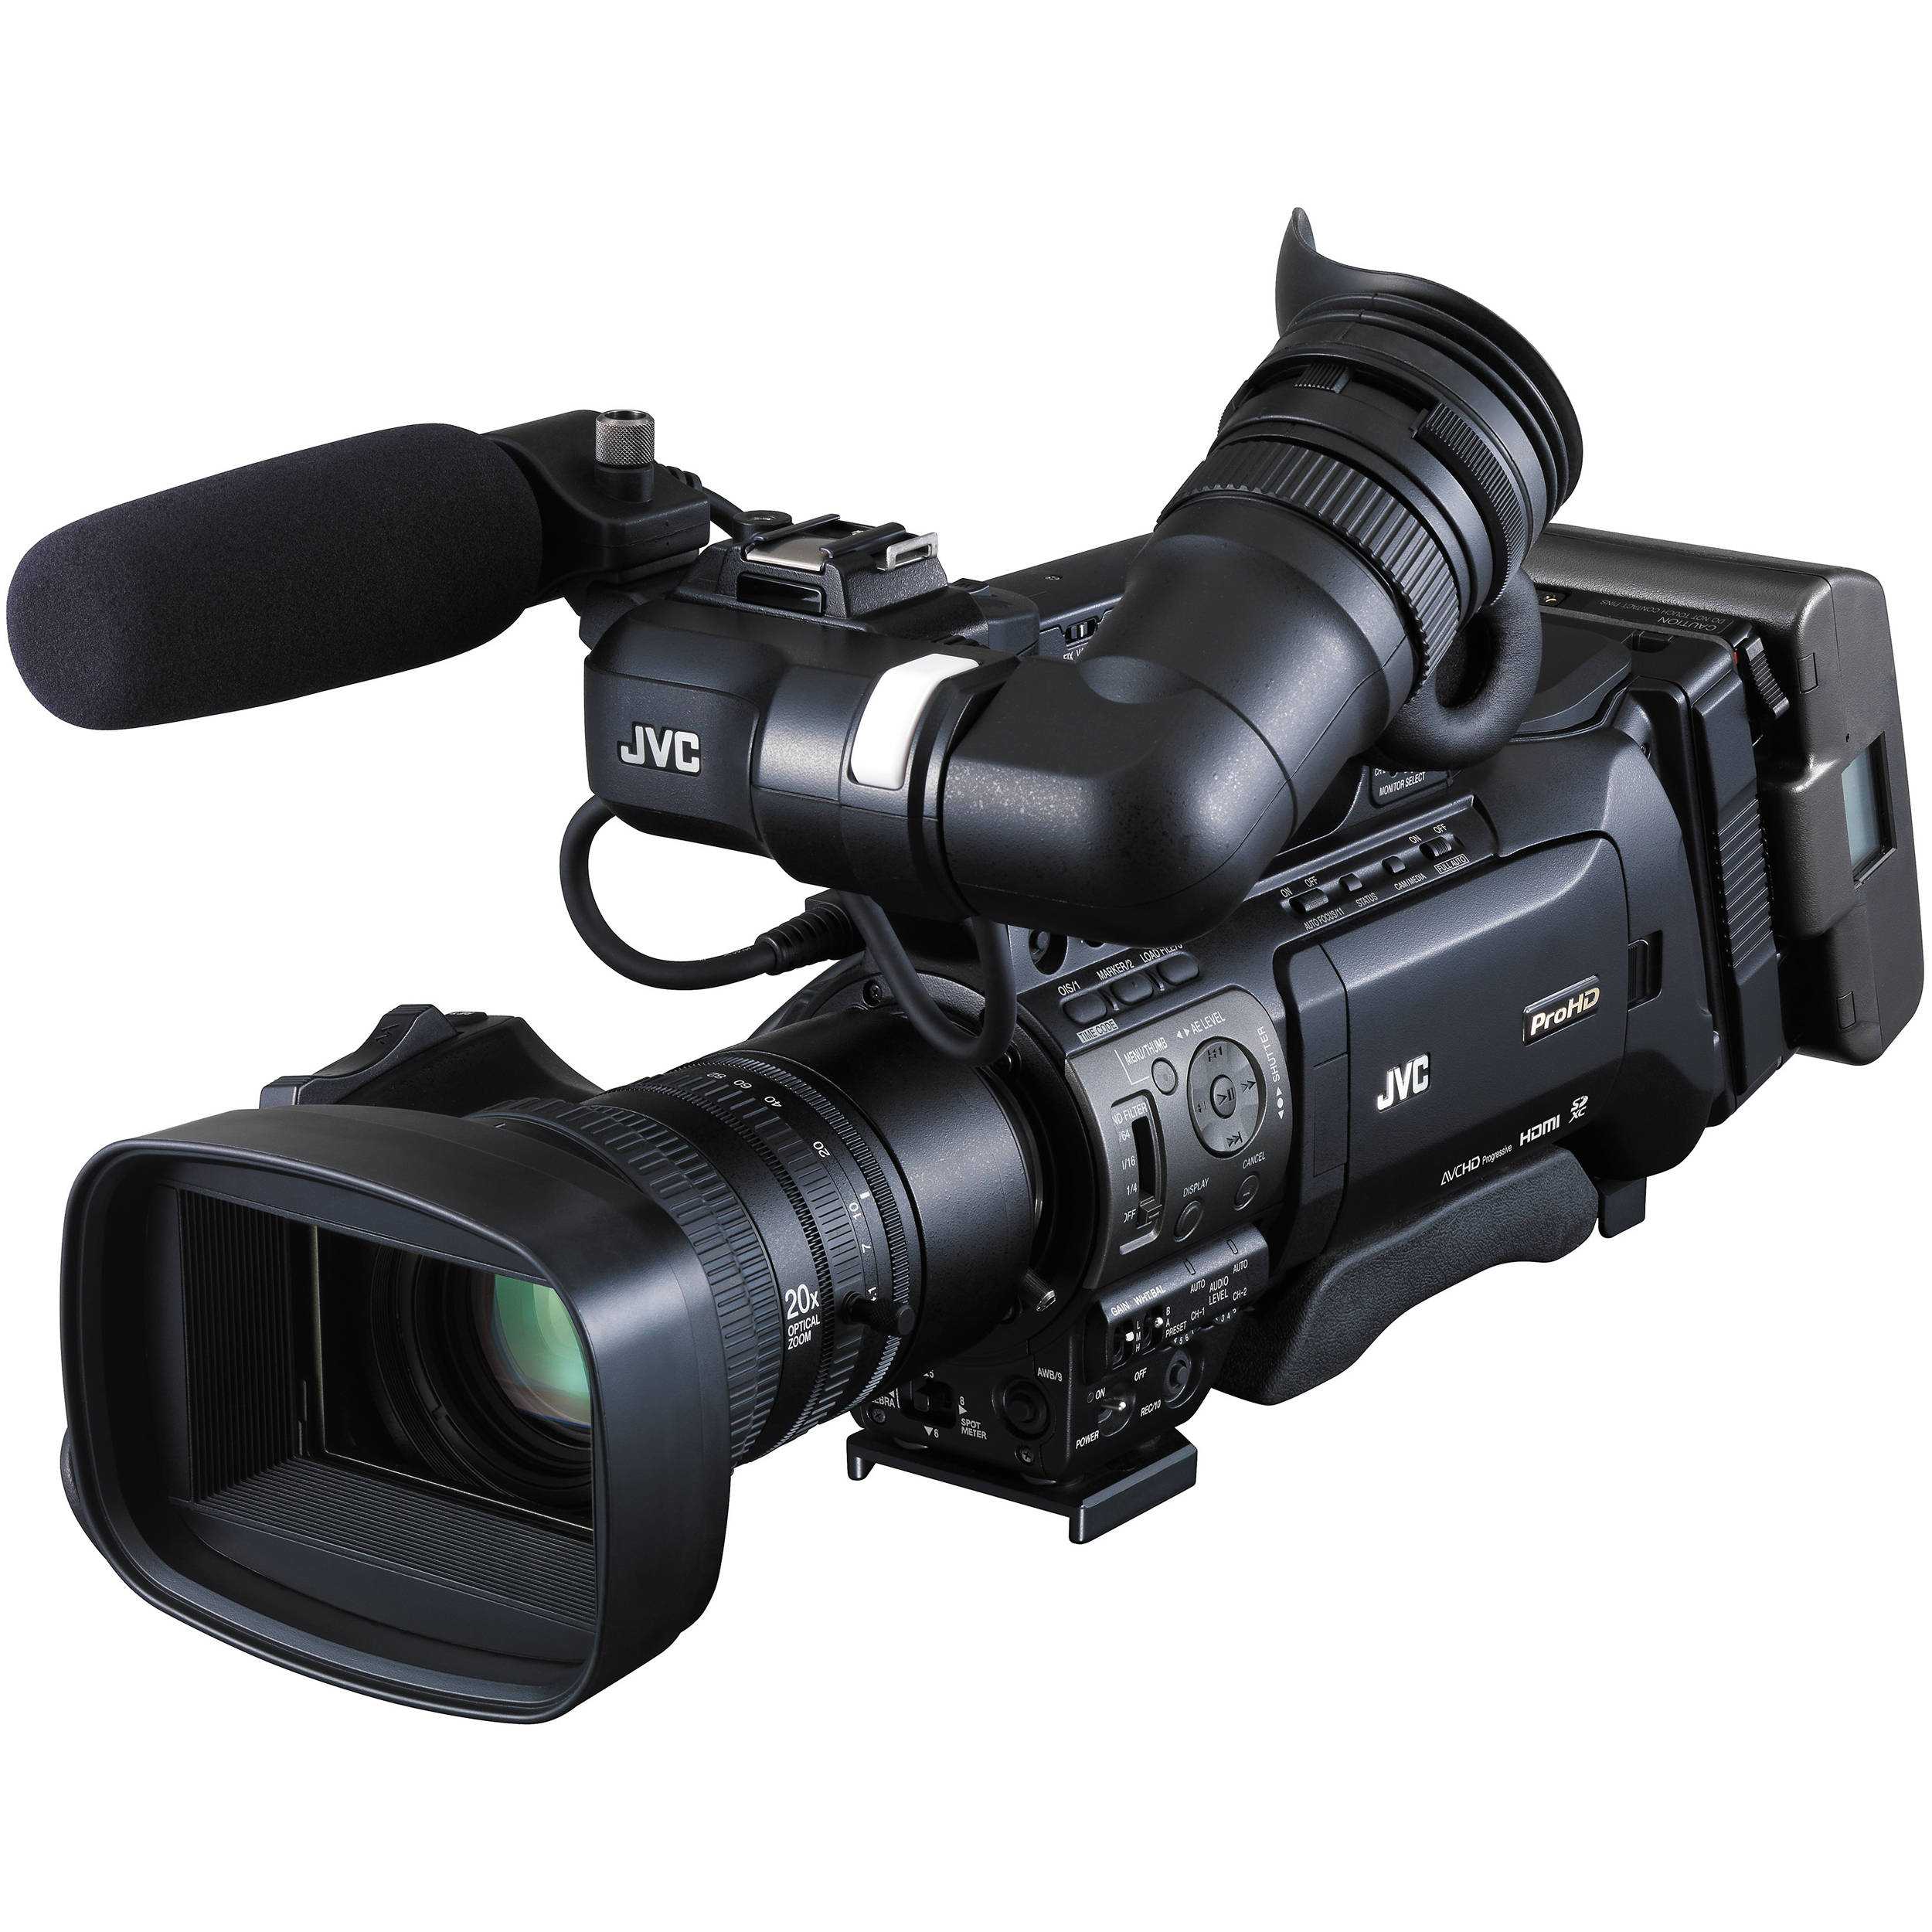 Видеокамера jvc gy-hm170 - купить , скидки, цена, отзывы, обзор, характеристики - видеокамеры